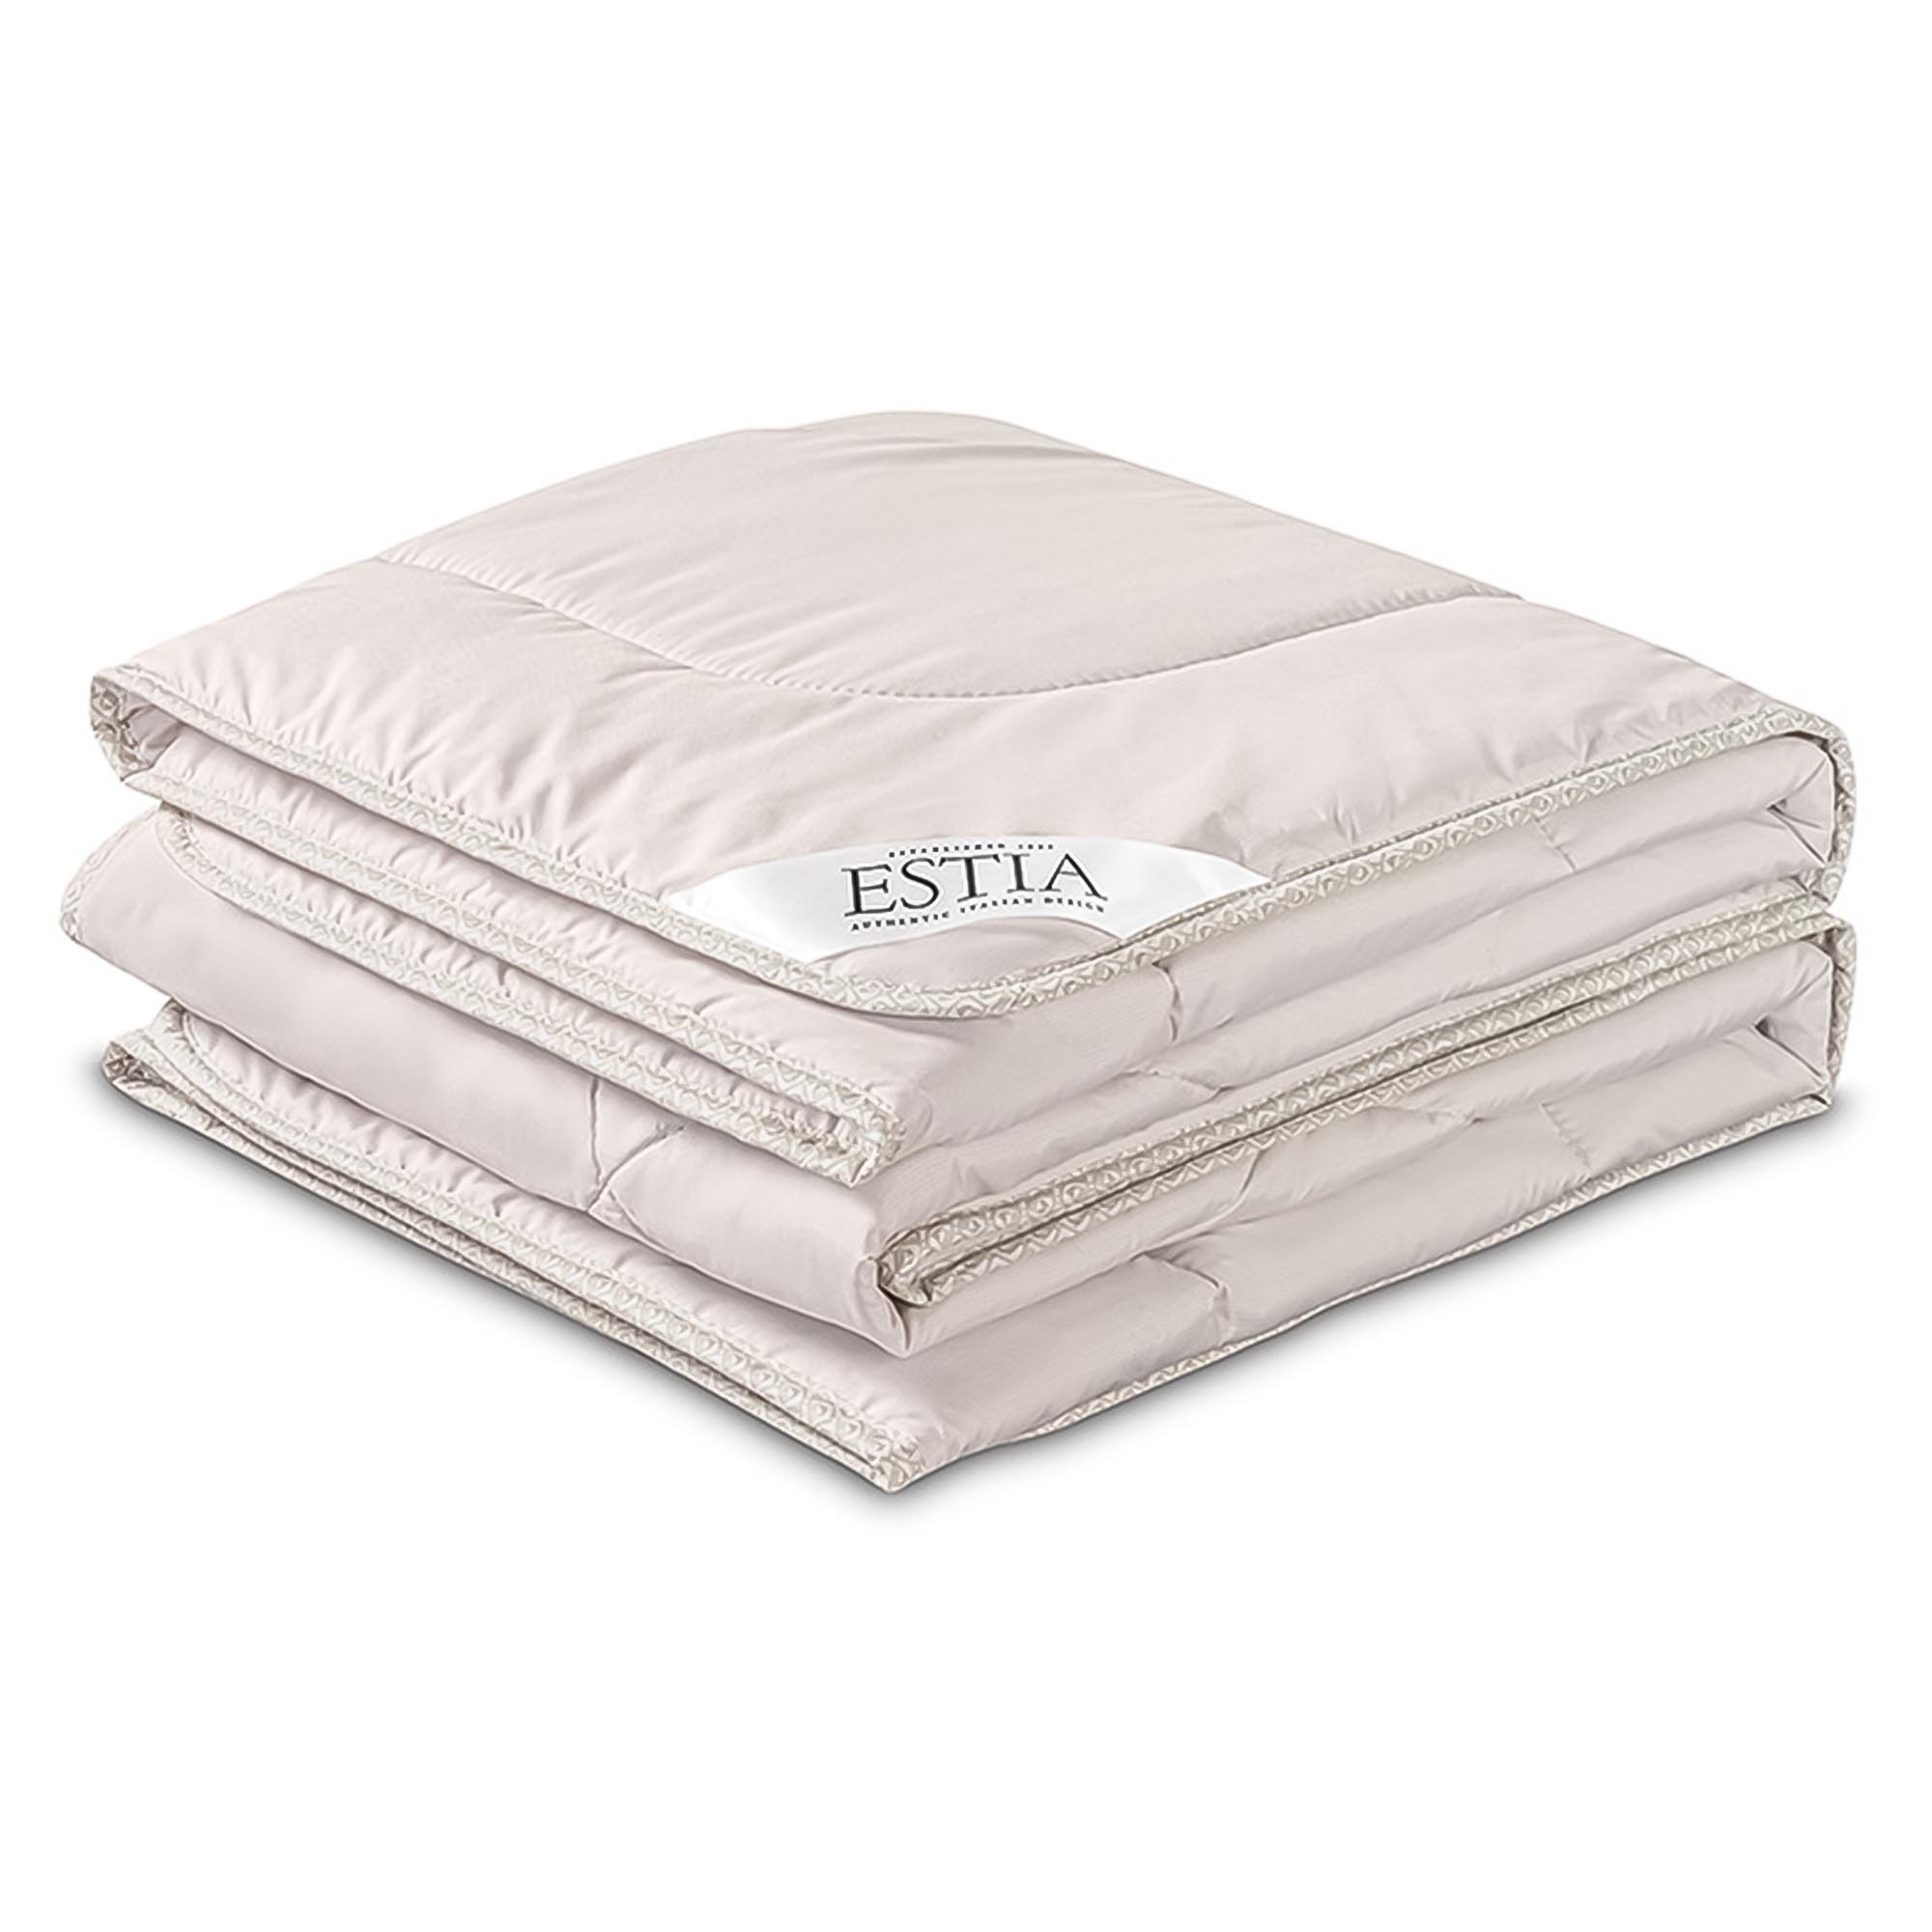 Одеяло Estia Монтиони легкое 140х200 см одеяло estia фальтерона среднее 140х200 см